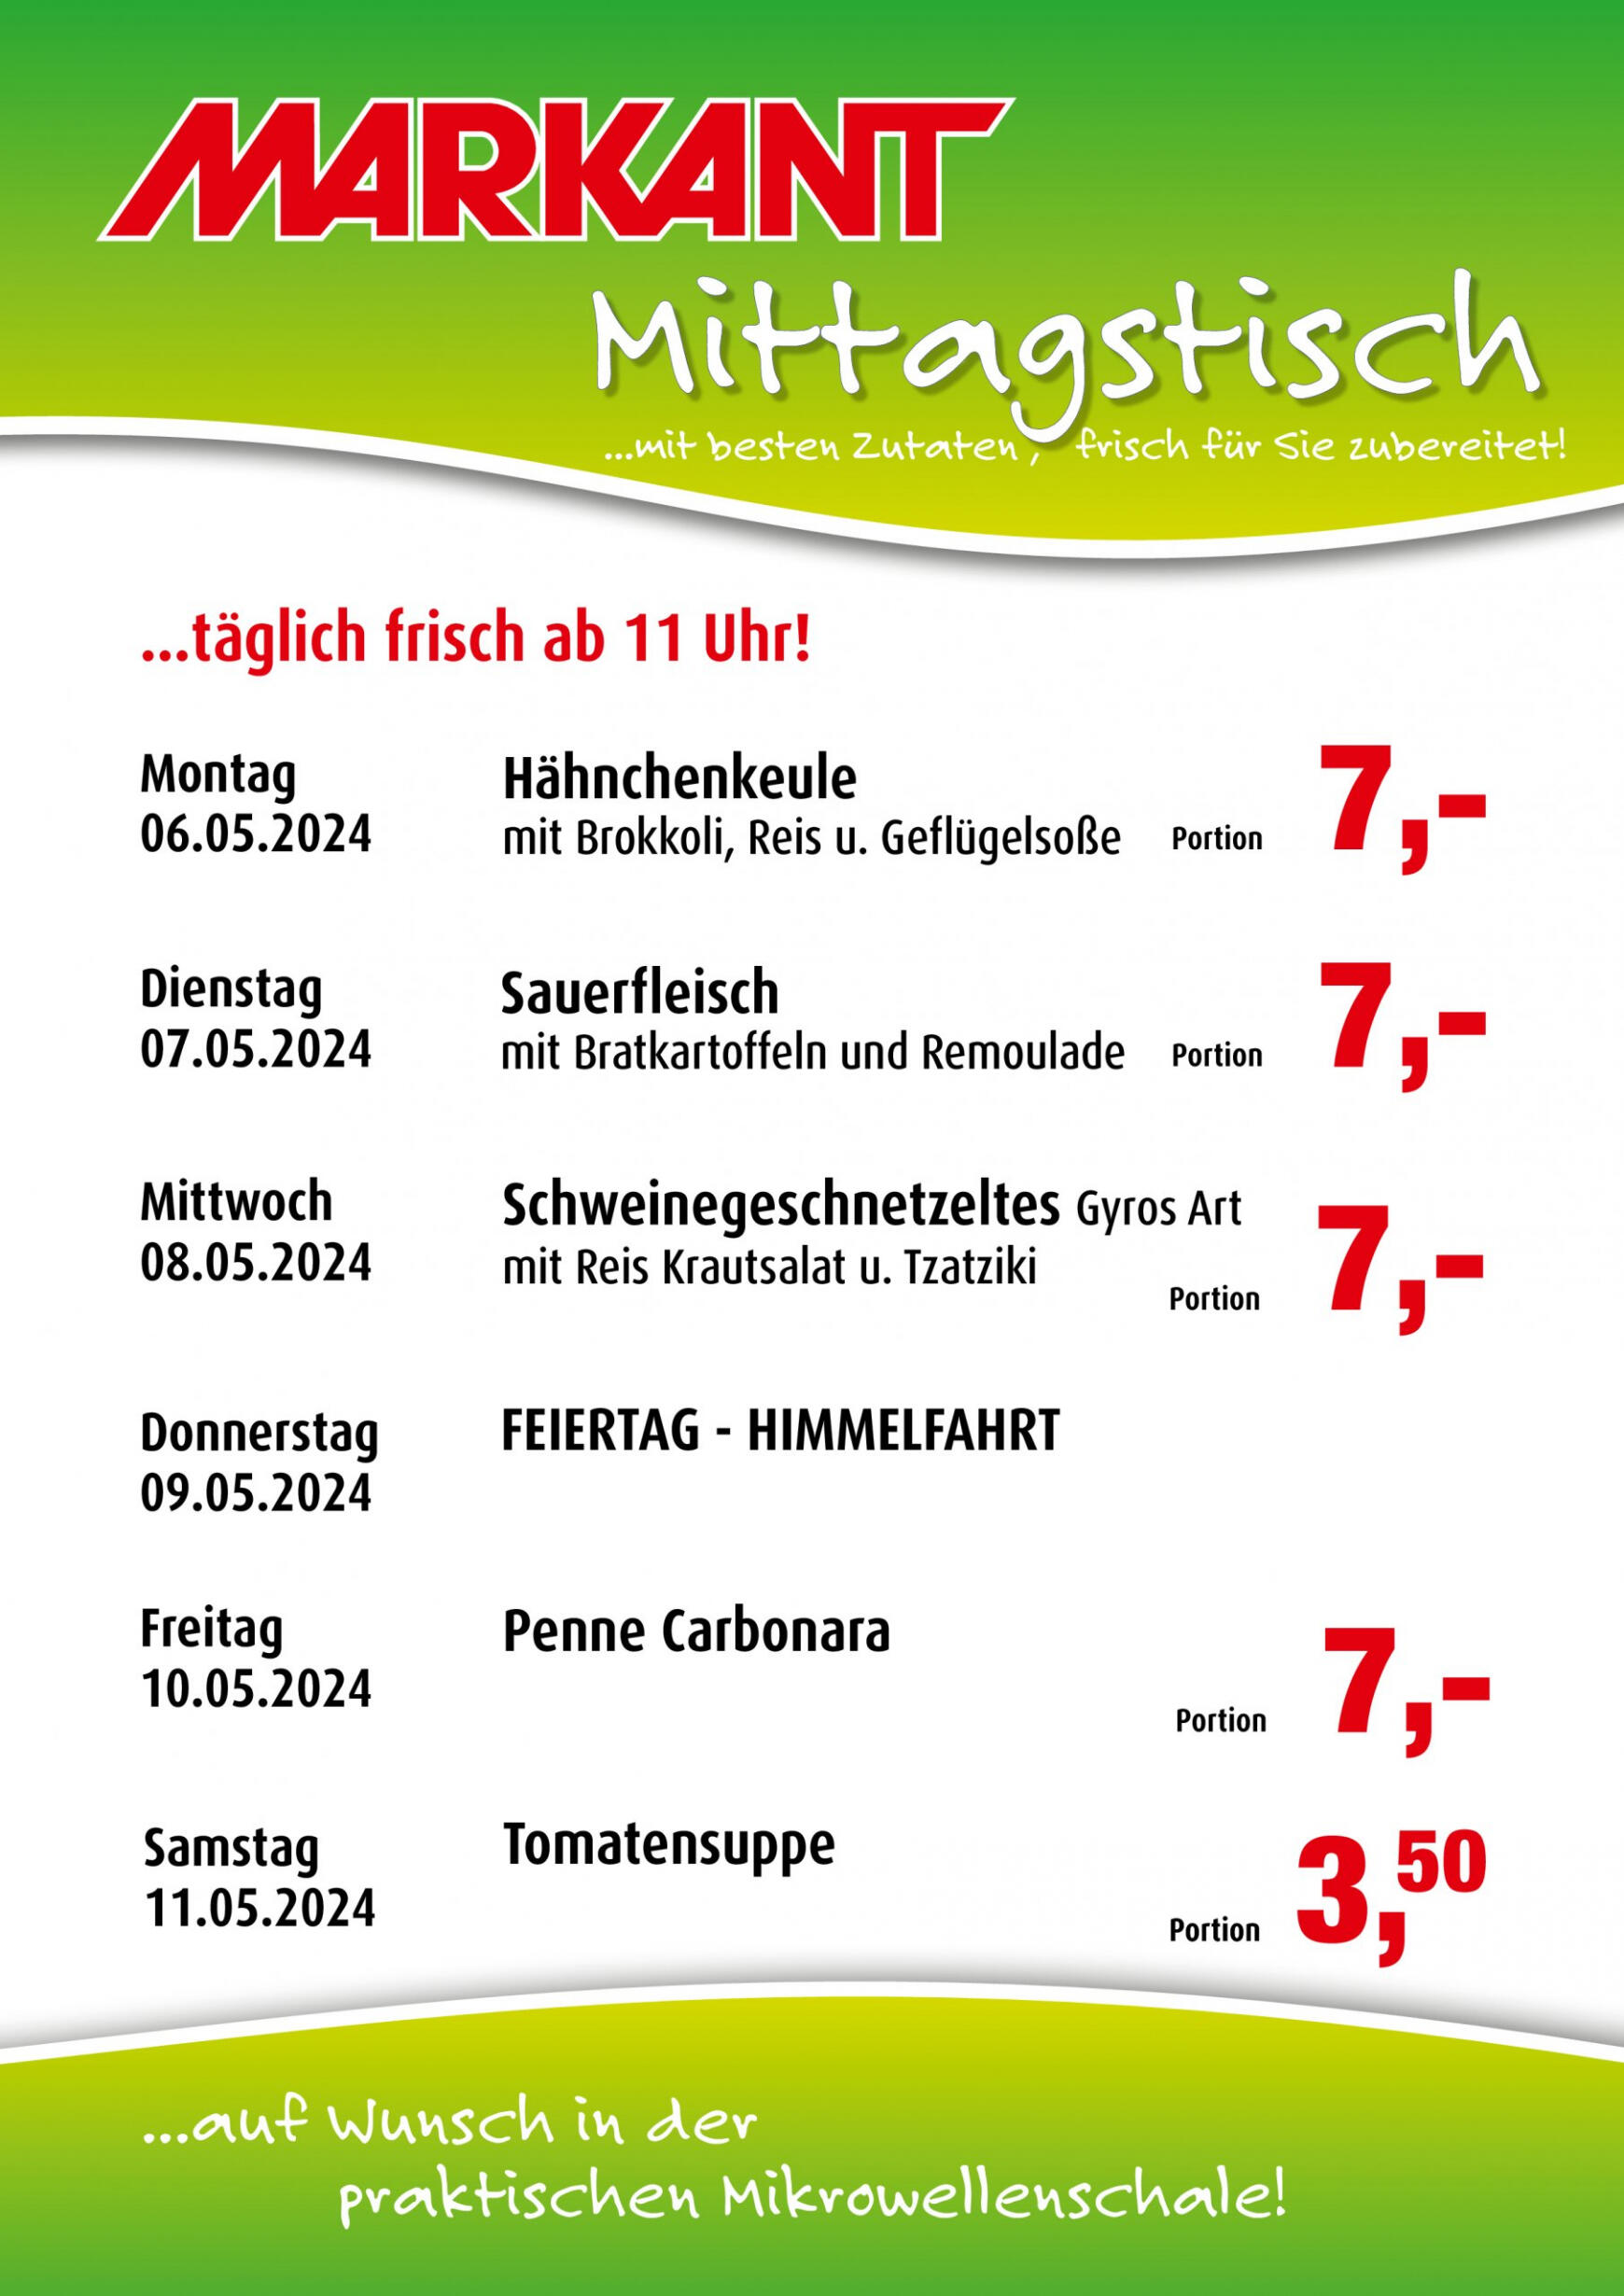 markant-freu-dich-drauf - Flyer Markant Freu Dich Drauf aktuell 06.05. - 11.05. - page: 1